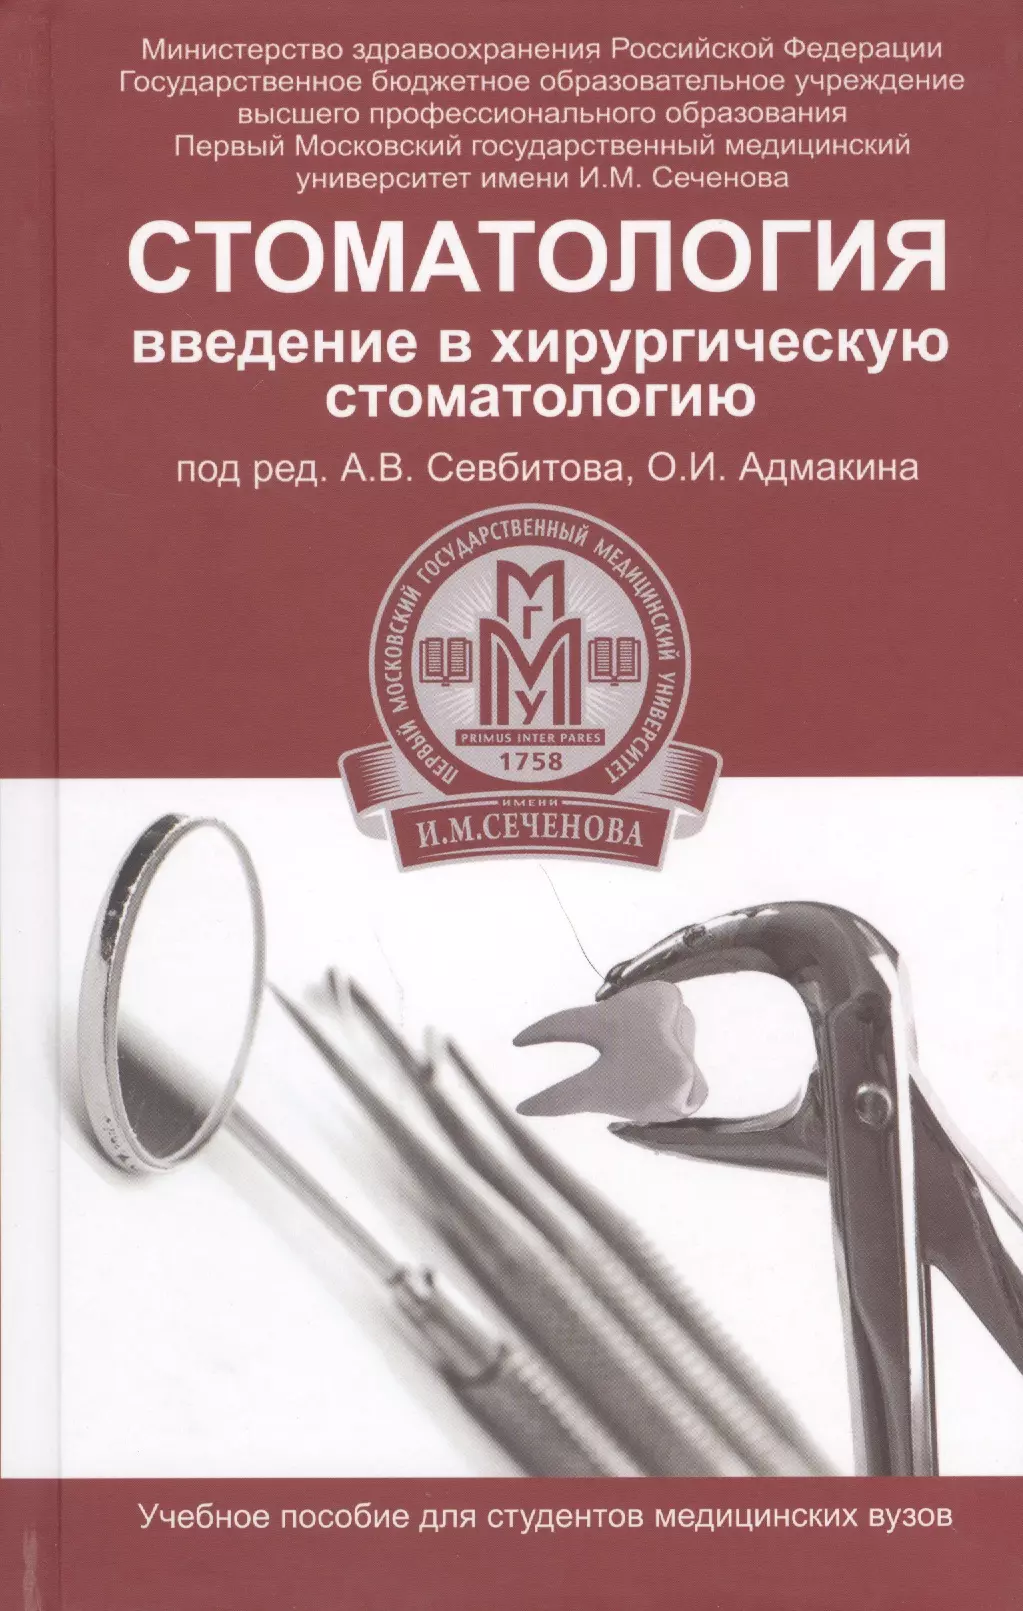 Севбитов Андрей Владимирович - Стоматология: введение в хирургическую стоматологию